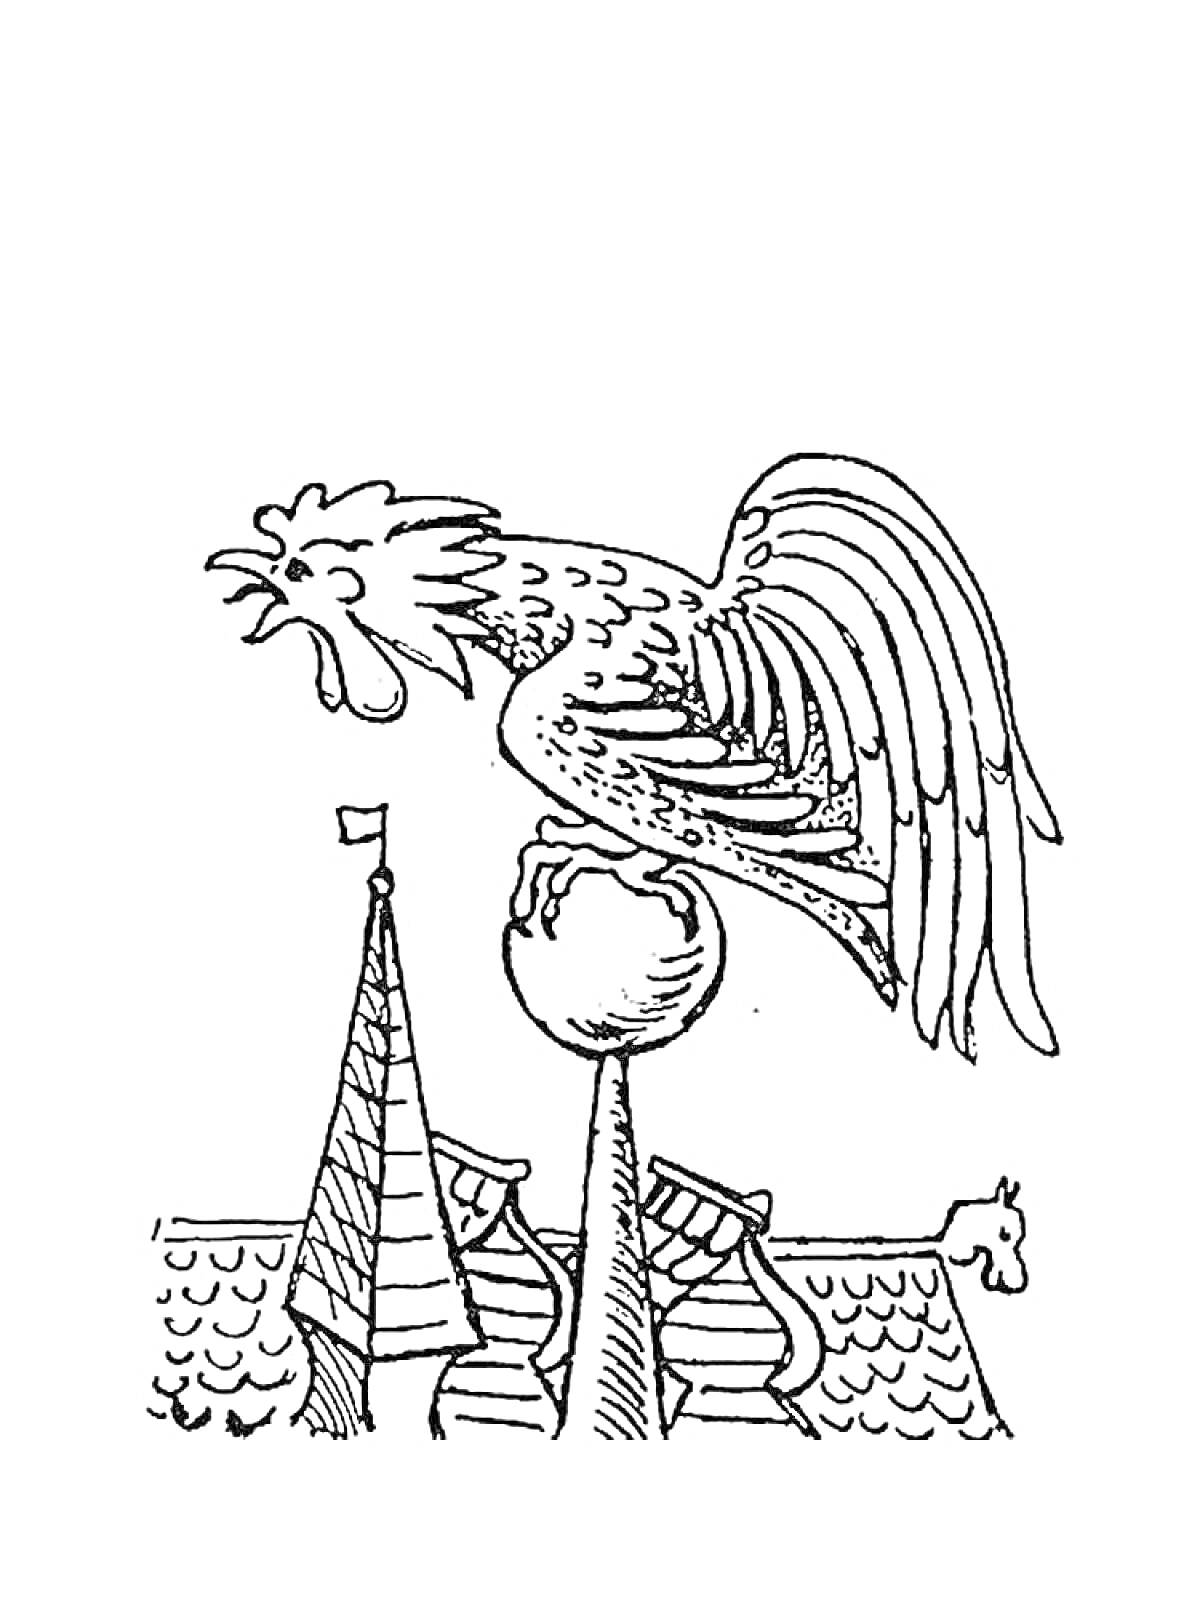 Петушок на шпиле, крыша с флюгером и черепицей